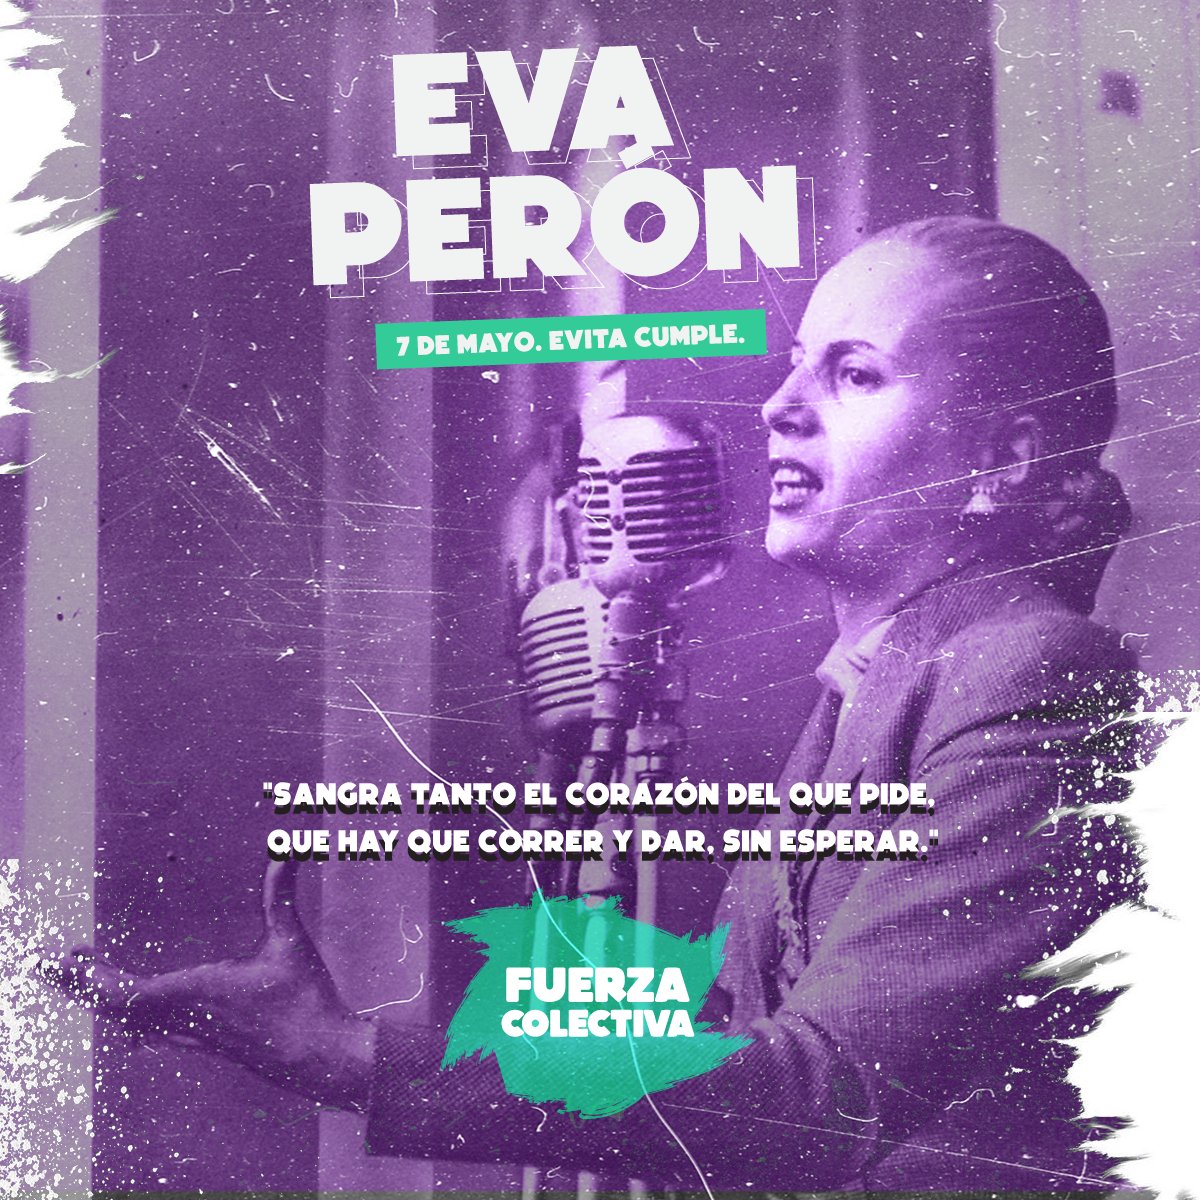 'Sangra tanto el corazón del que pide, que hay que correr y dar, sin esperar.' Eva Perón 🤍
#EvitaCumple